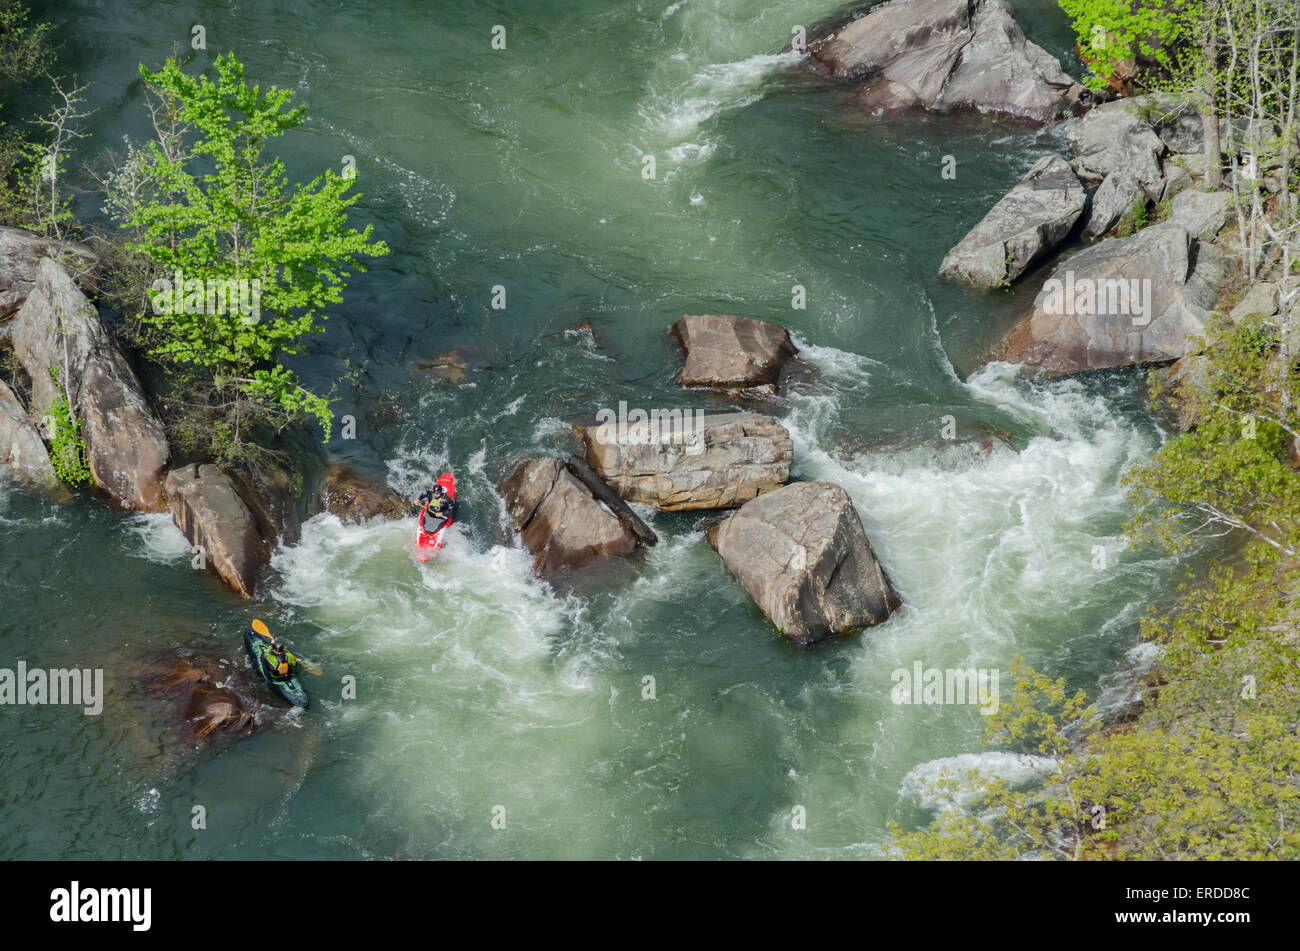 Deux kayakistes attaquer rapids blancs de l'eau Banque D'Images